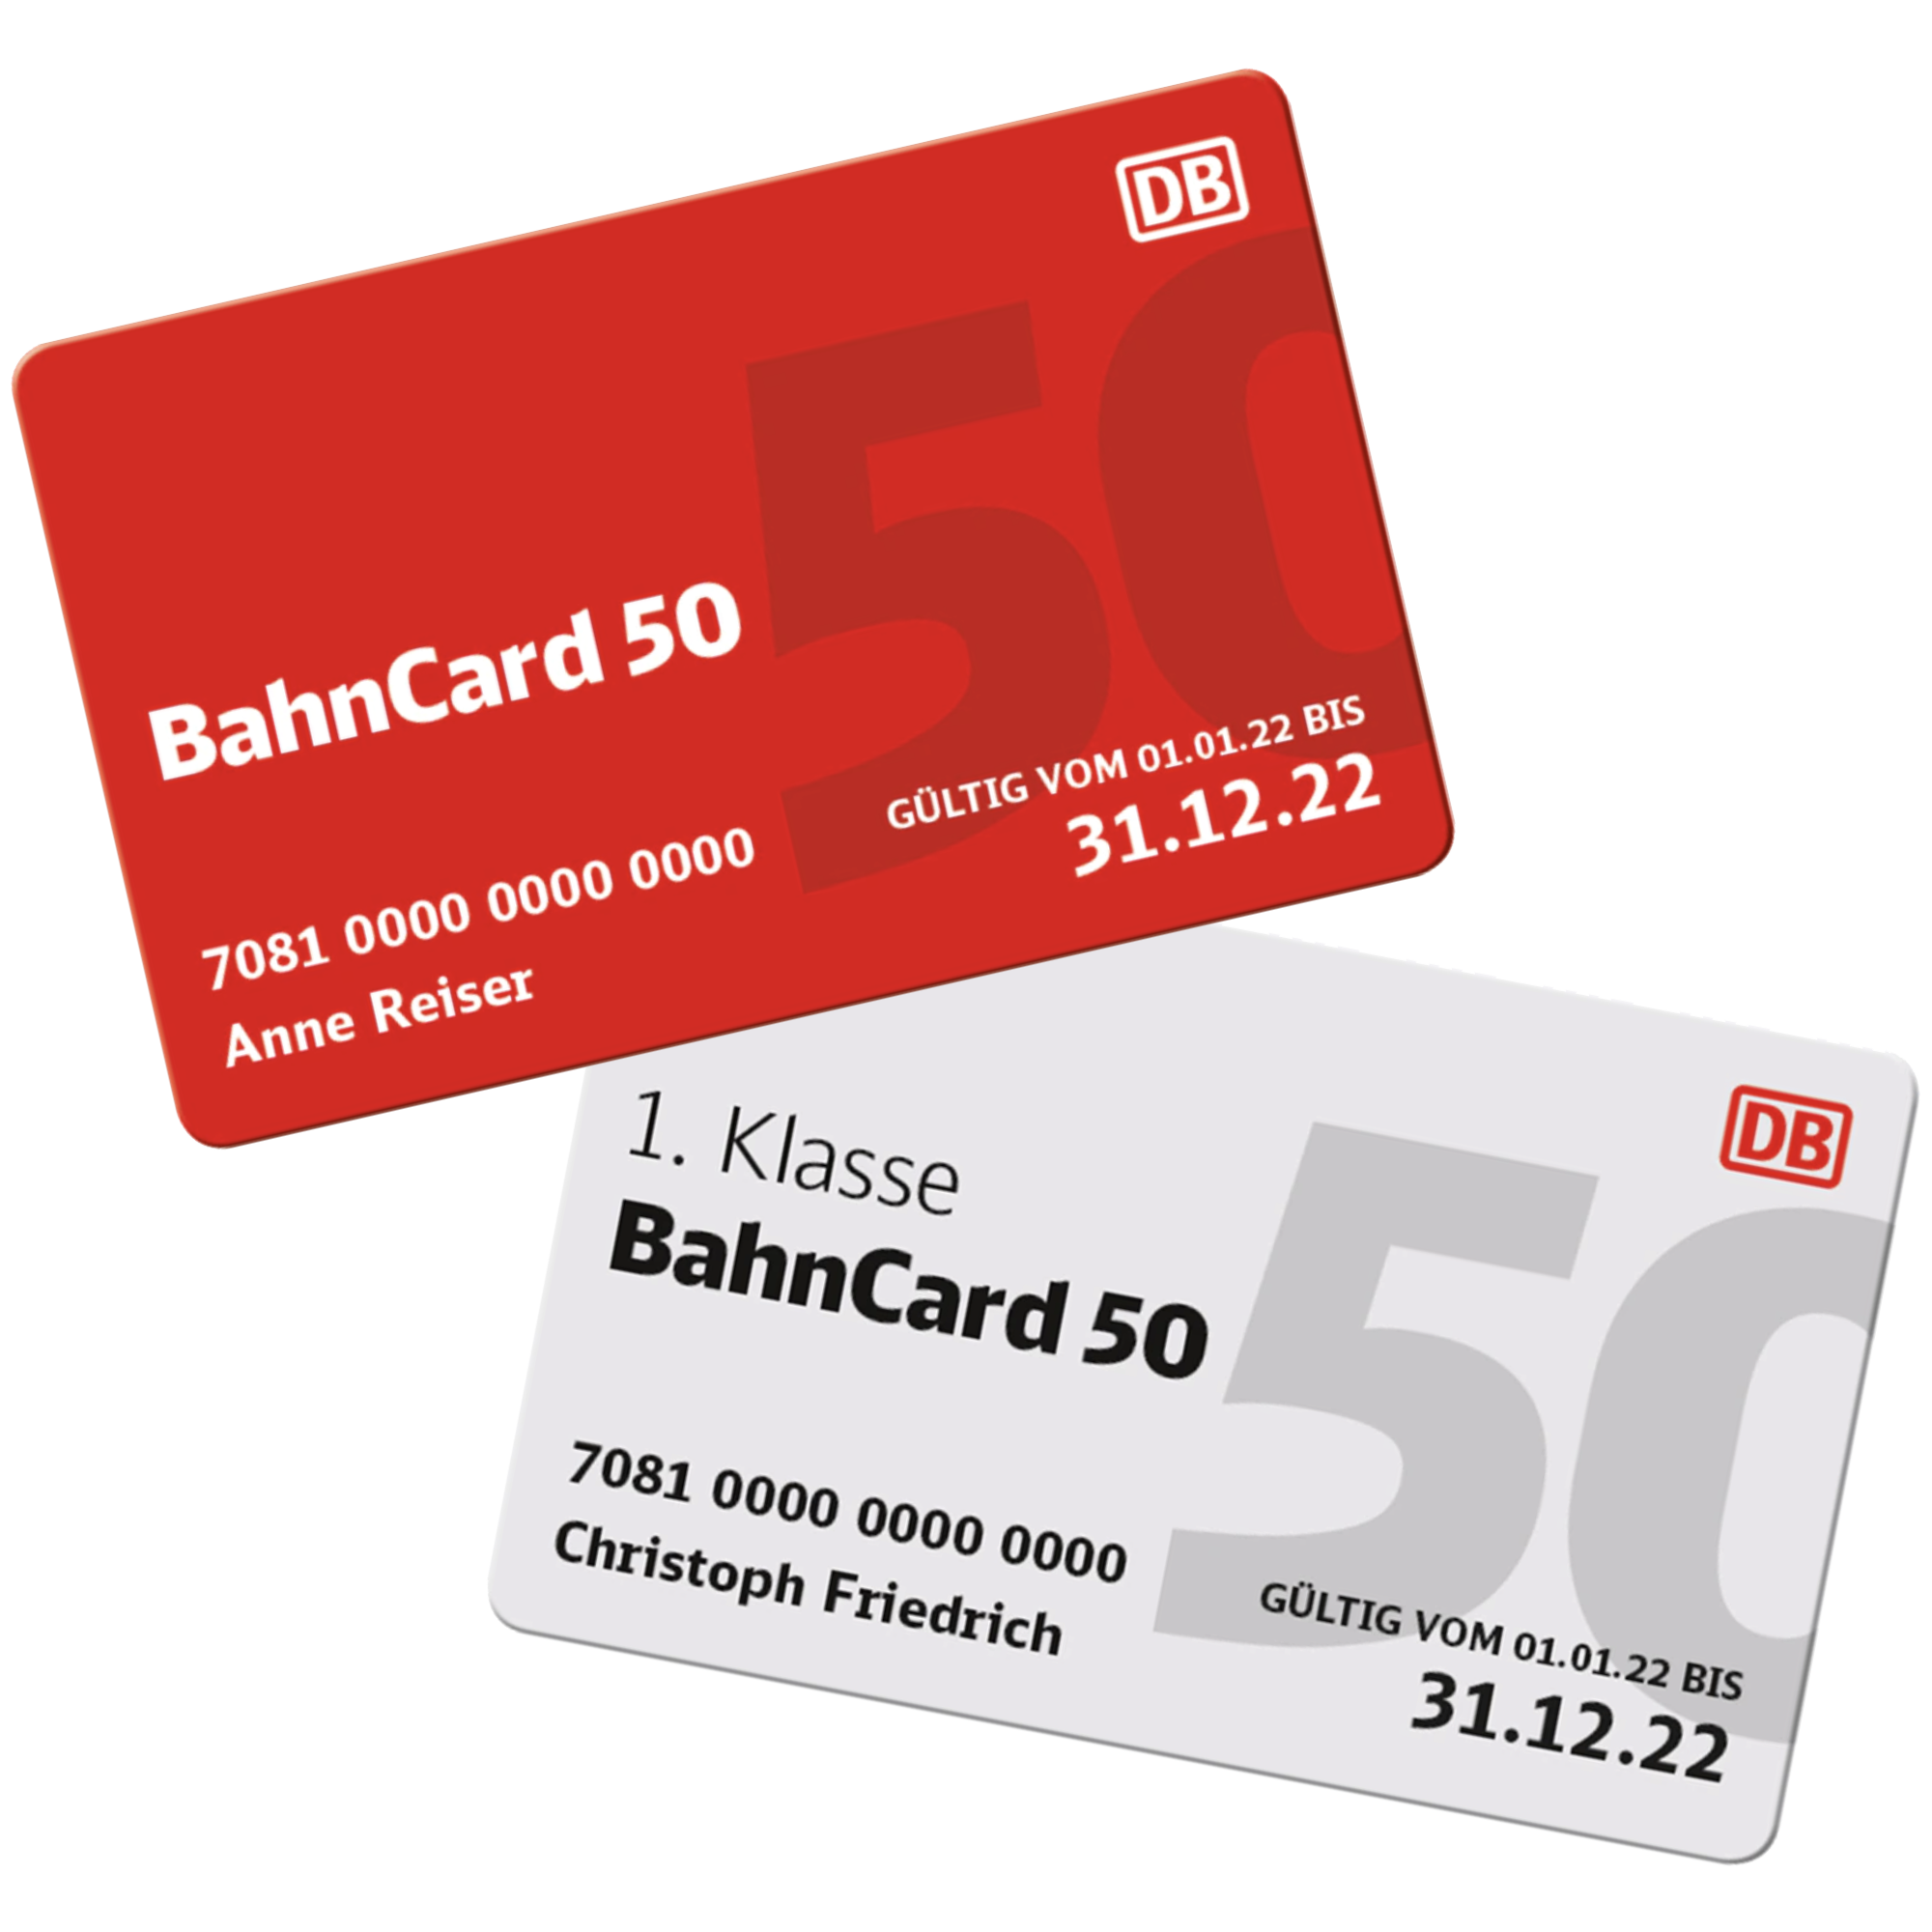 BahnCard 50